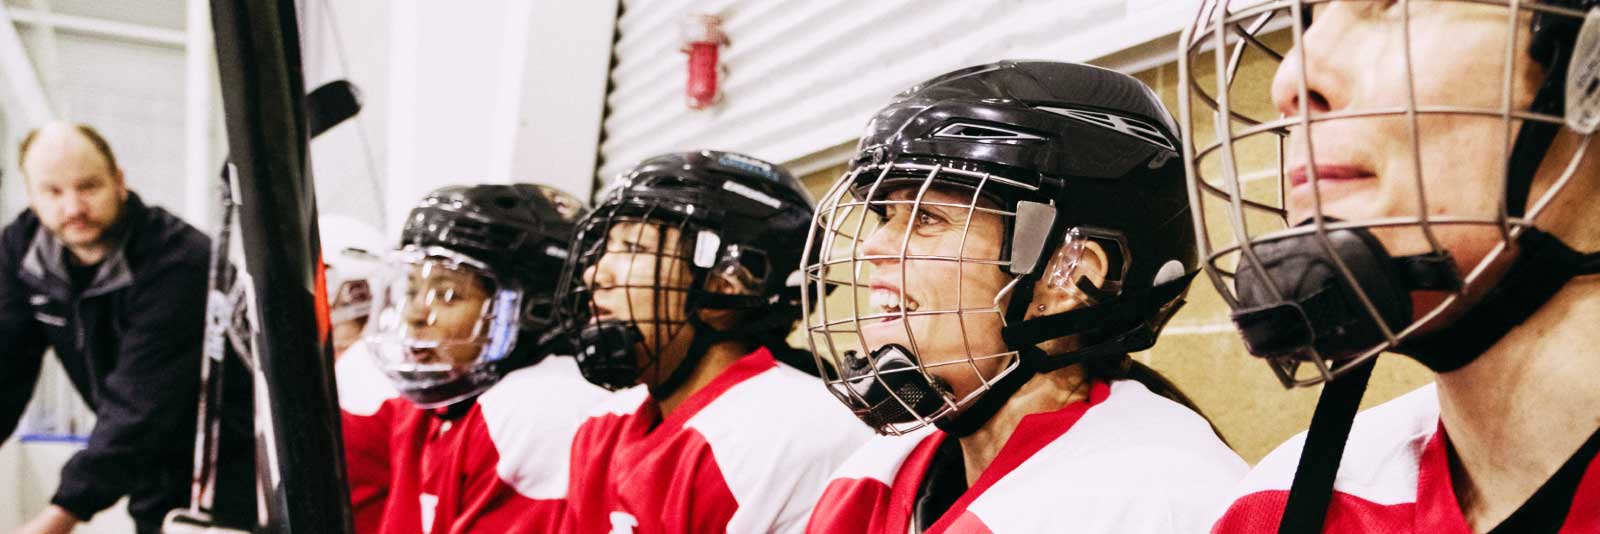 women's hockey team